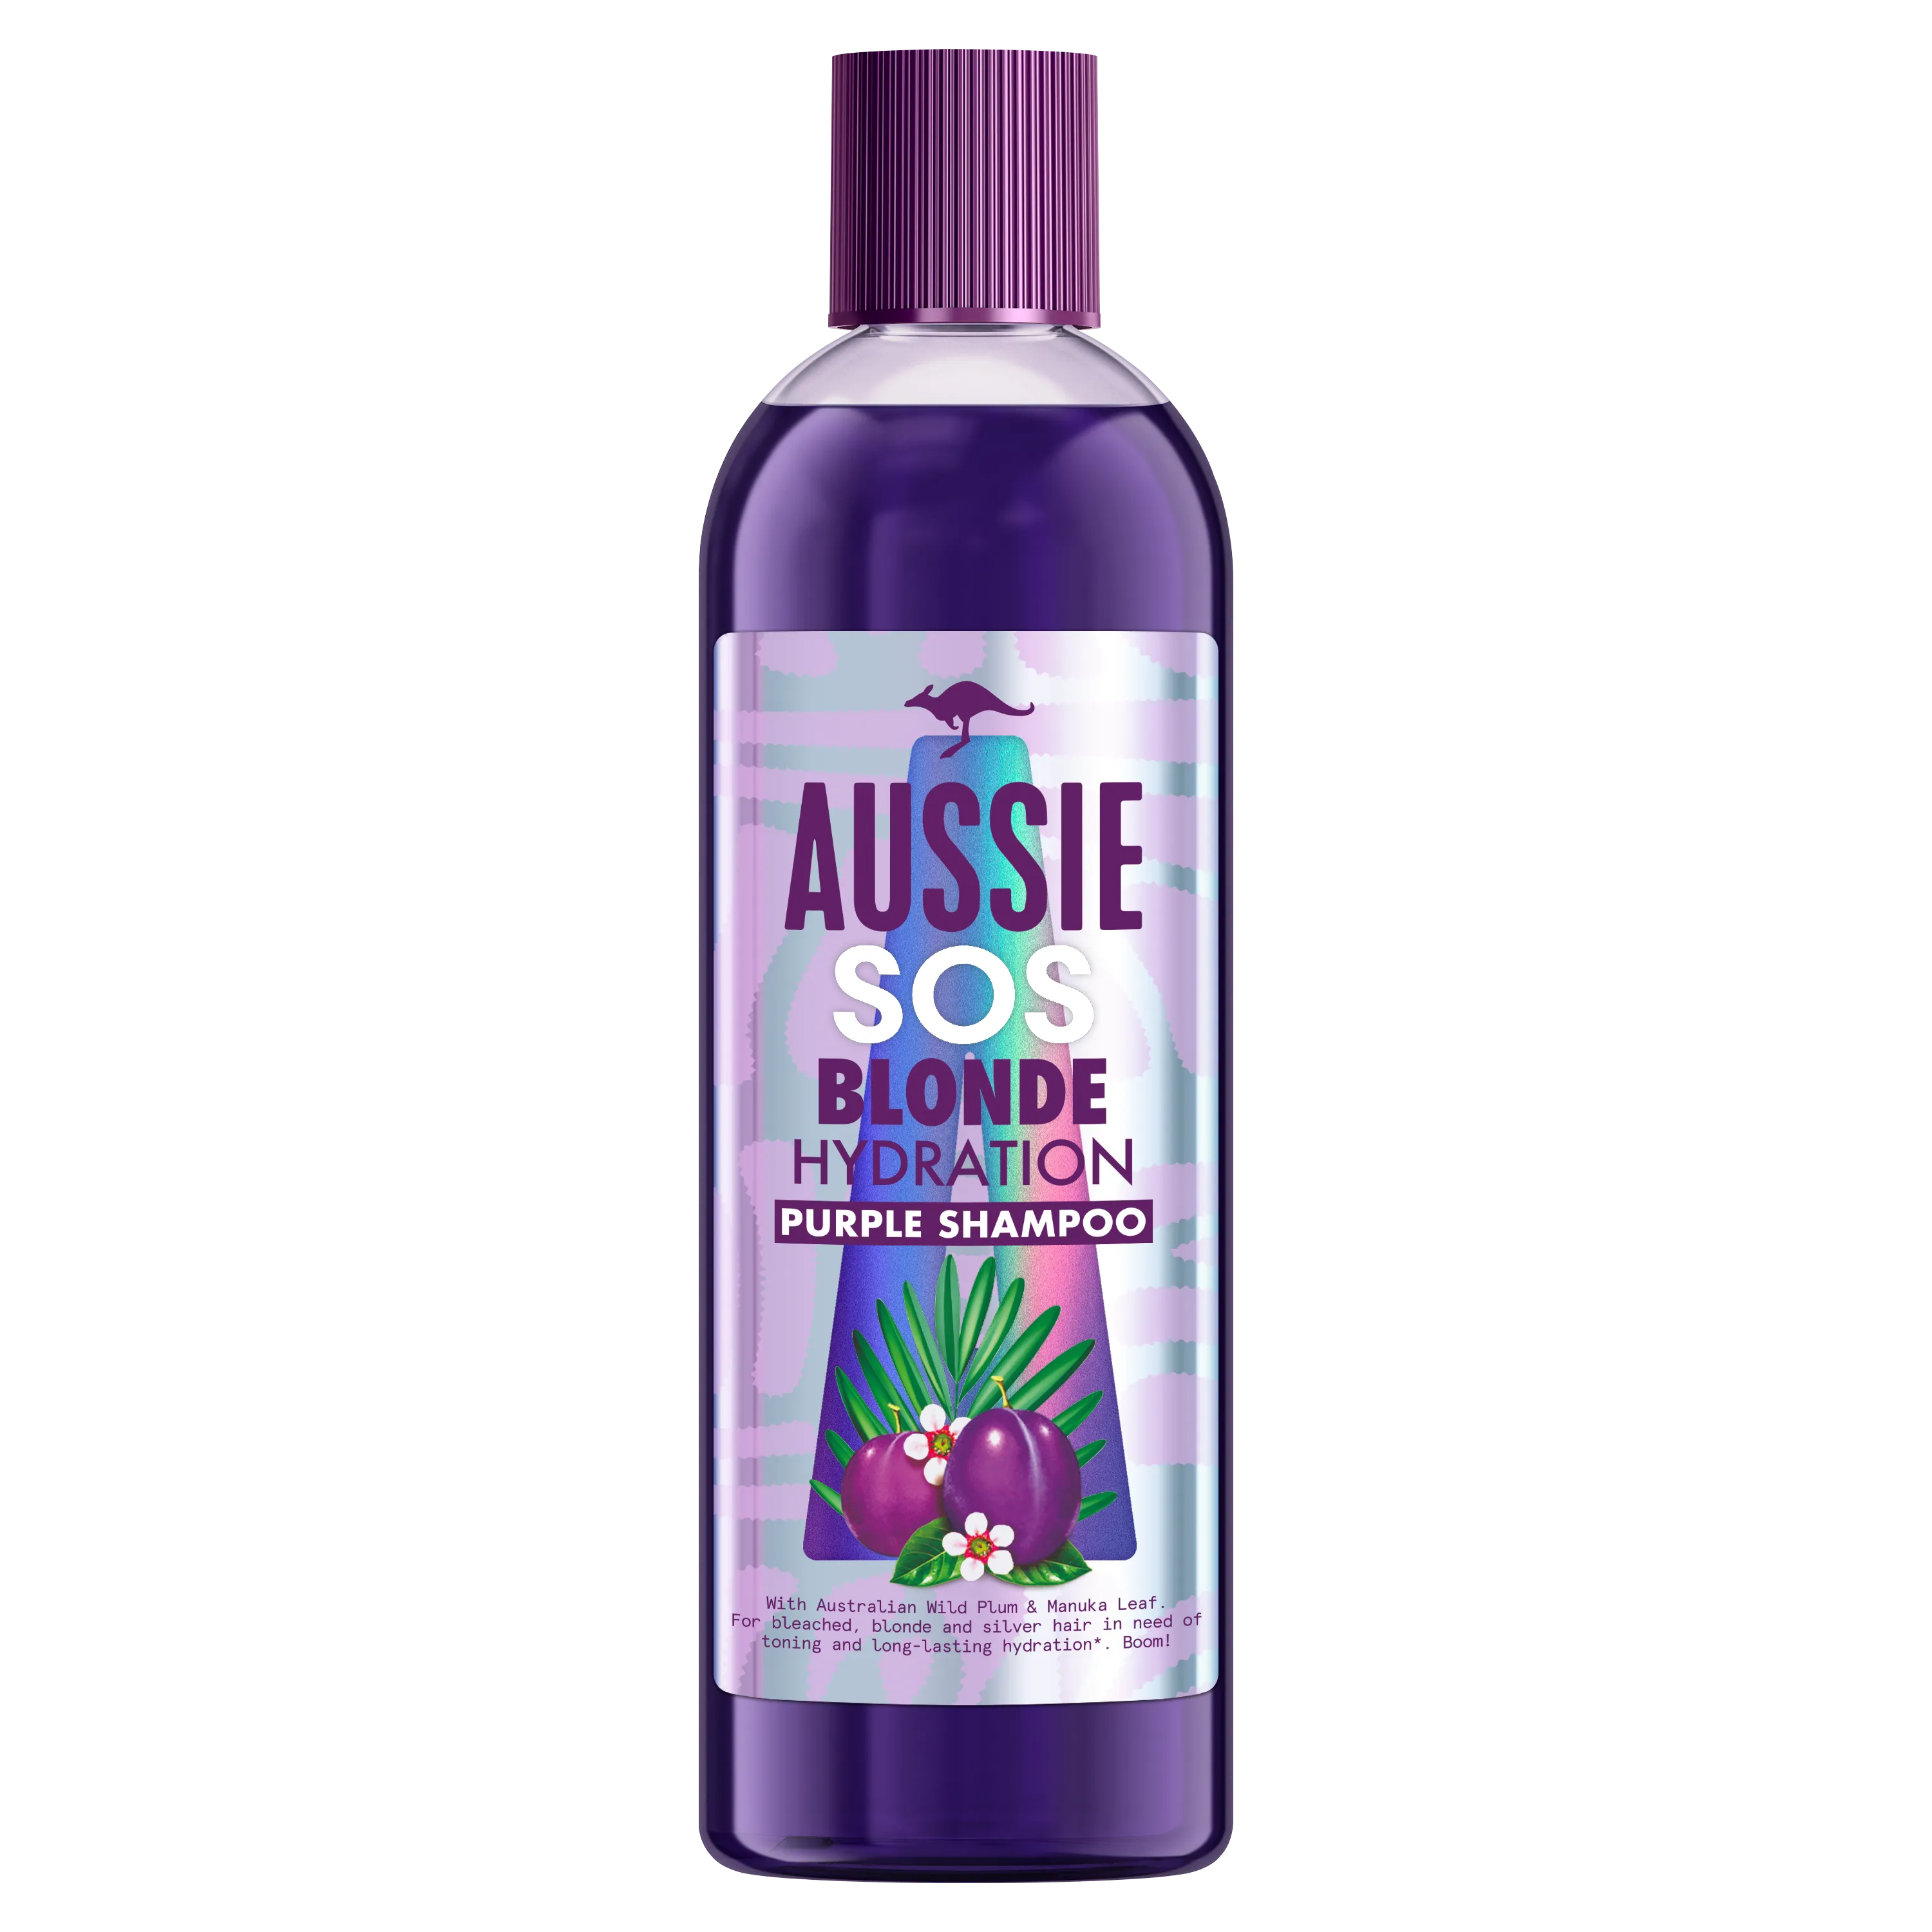 Aussie SOS Blonde Hydration szampon do włosów blond, 290 ml